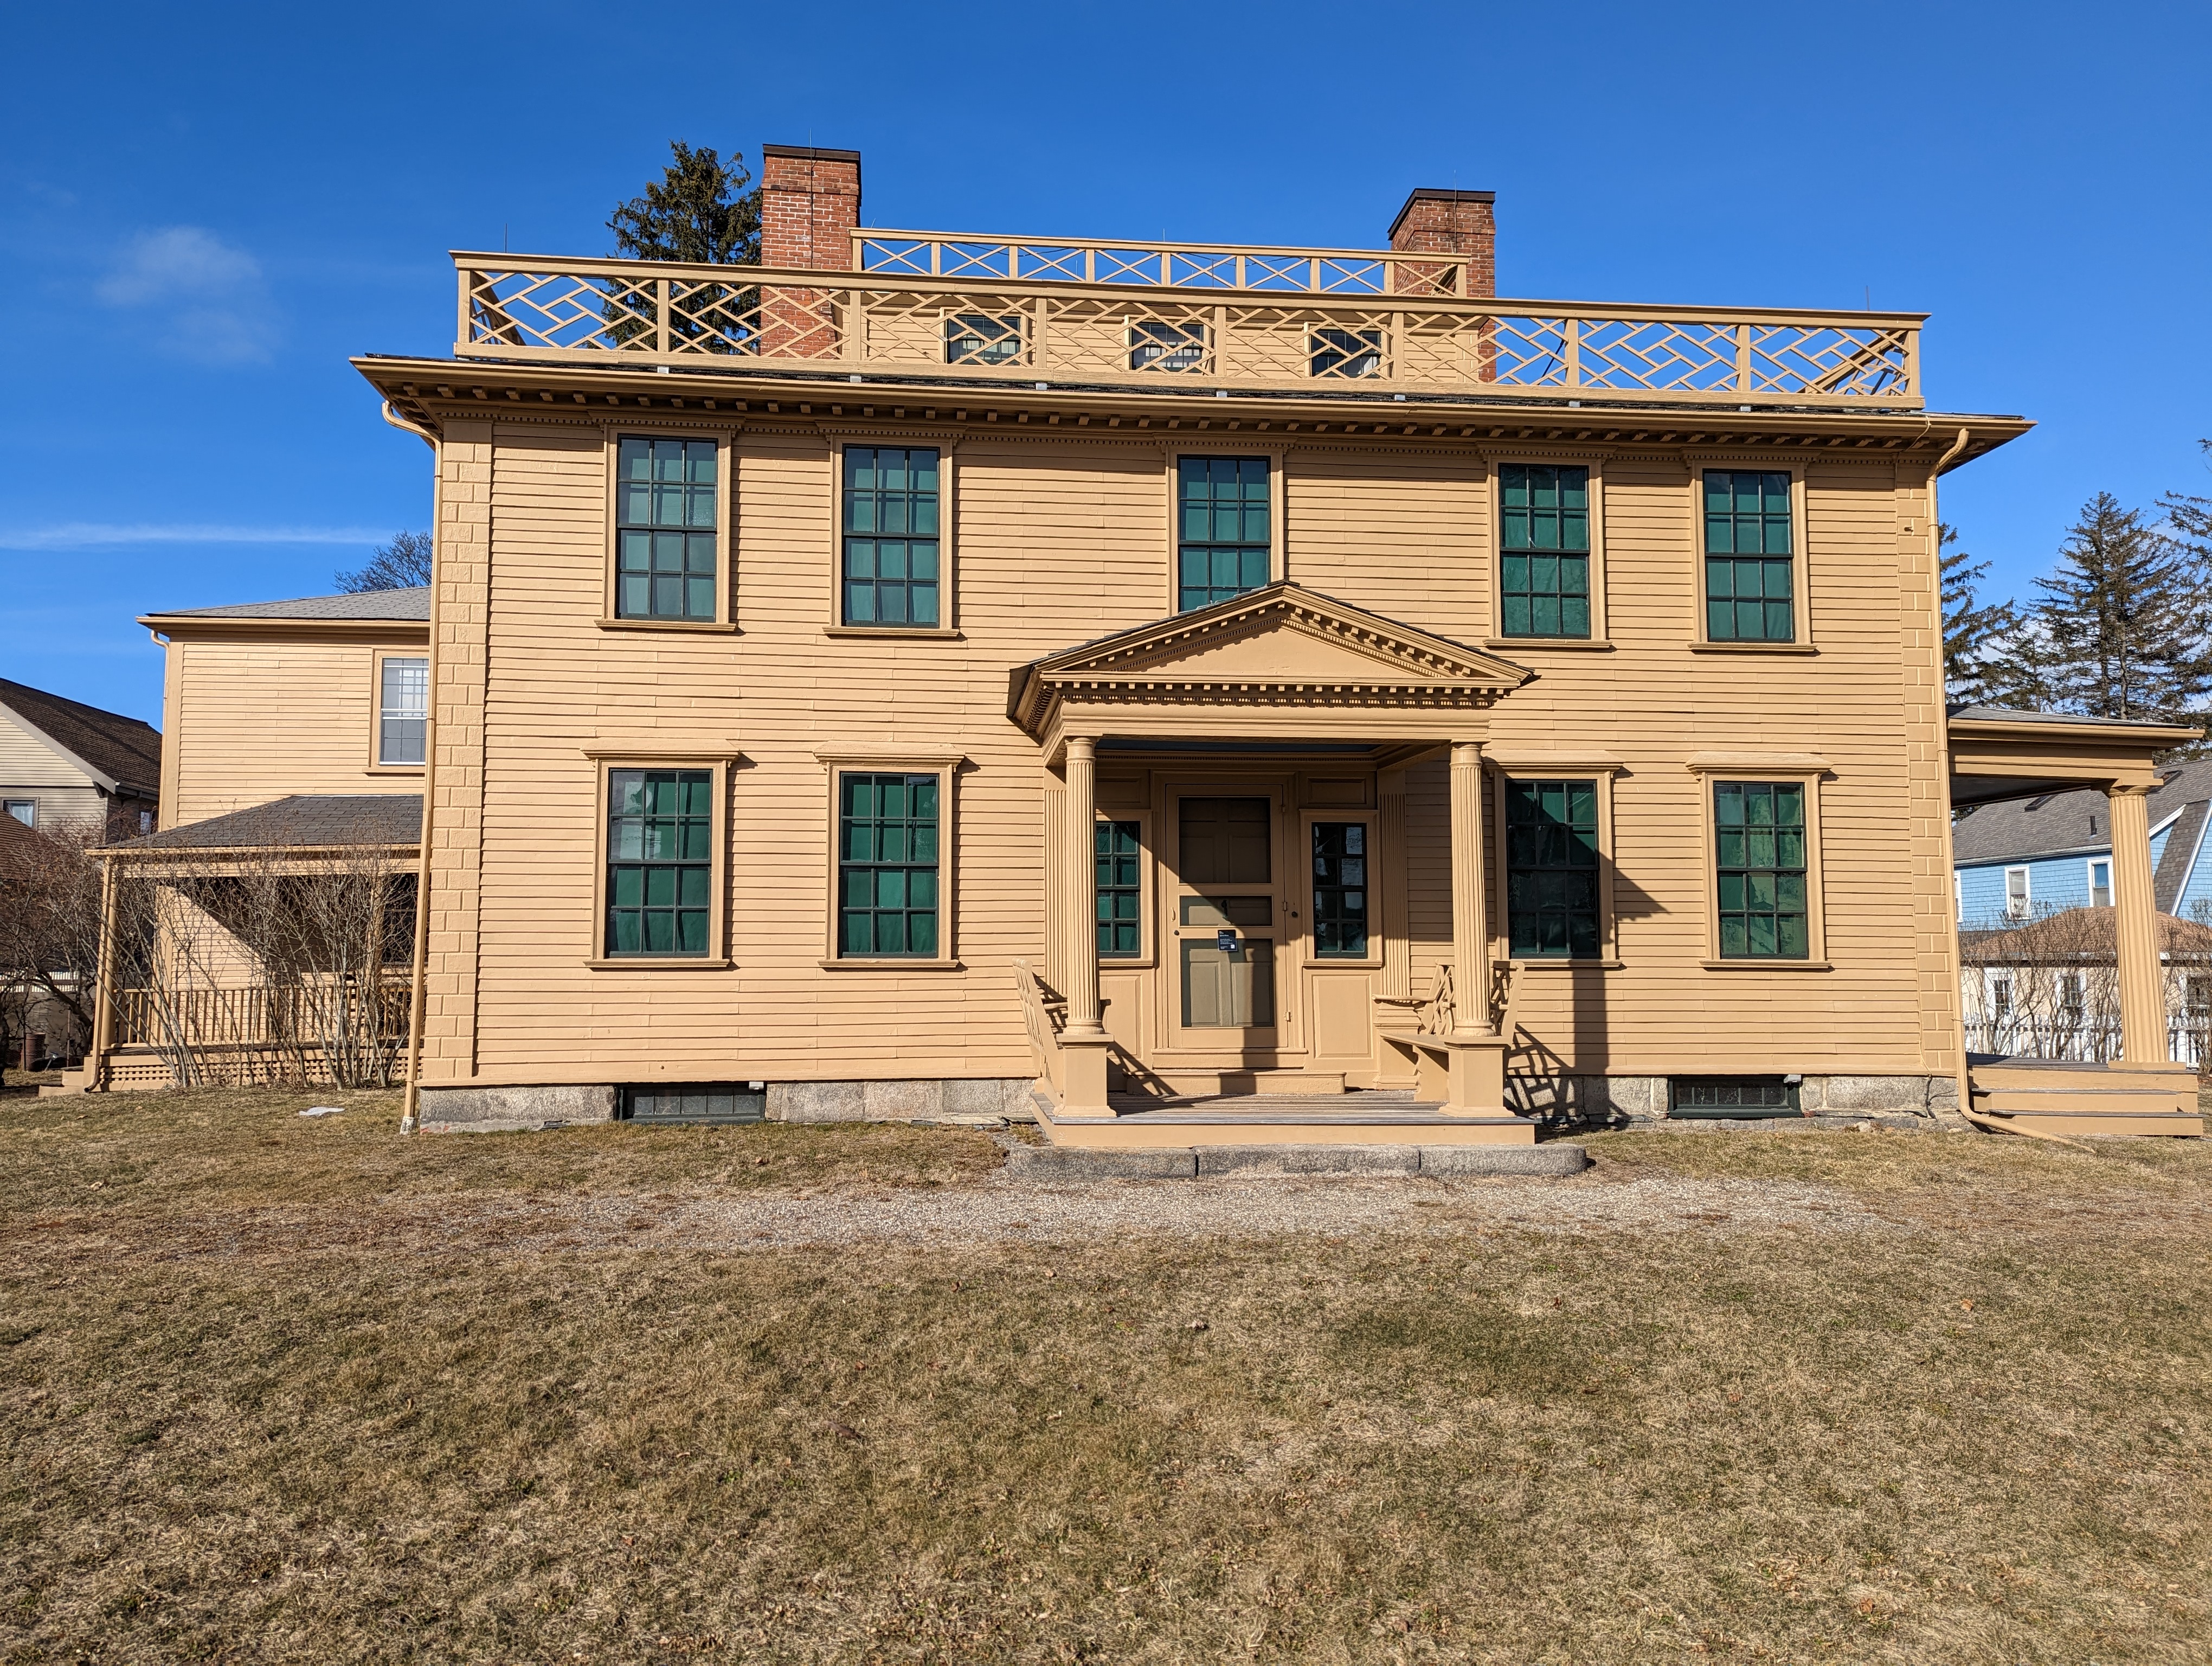 Josiah Quincy Jr. Home, 1770